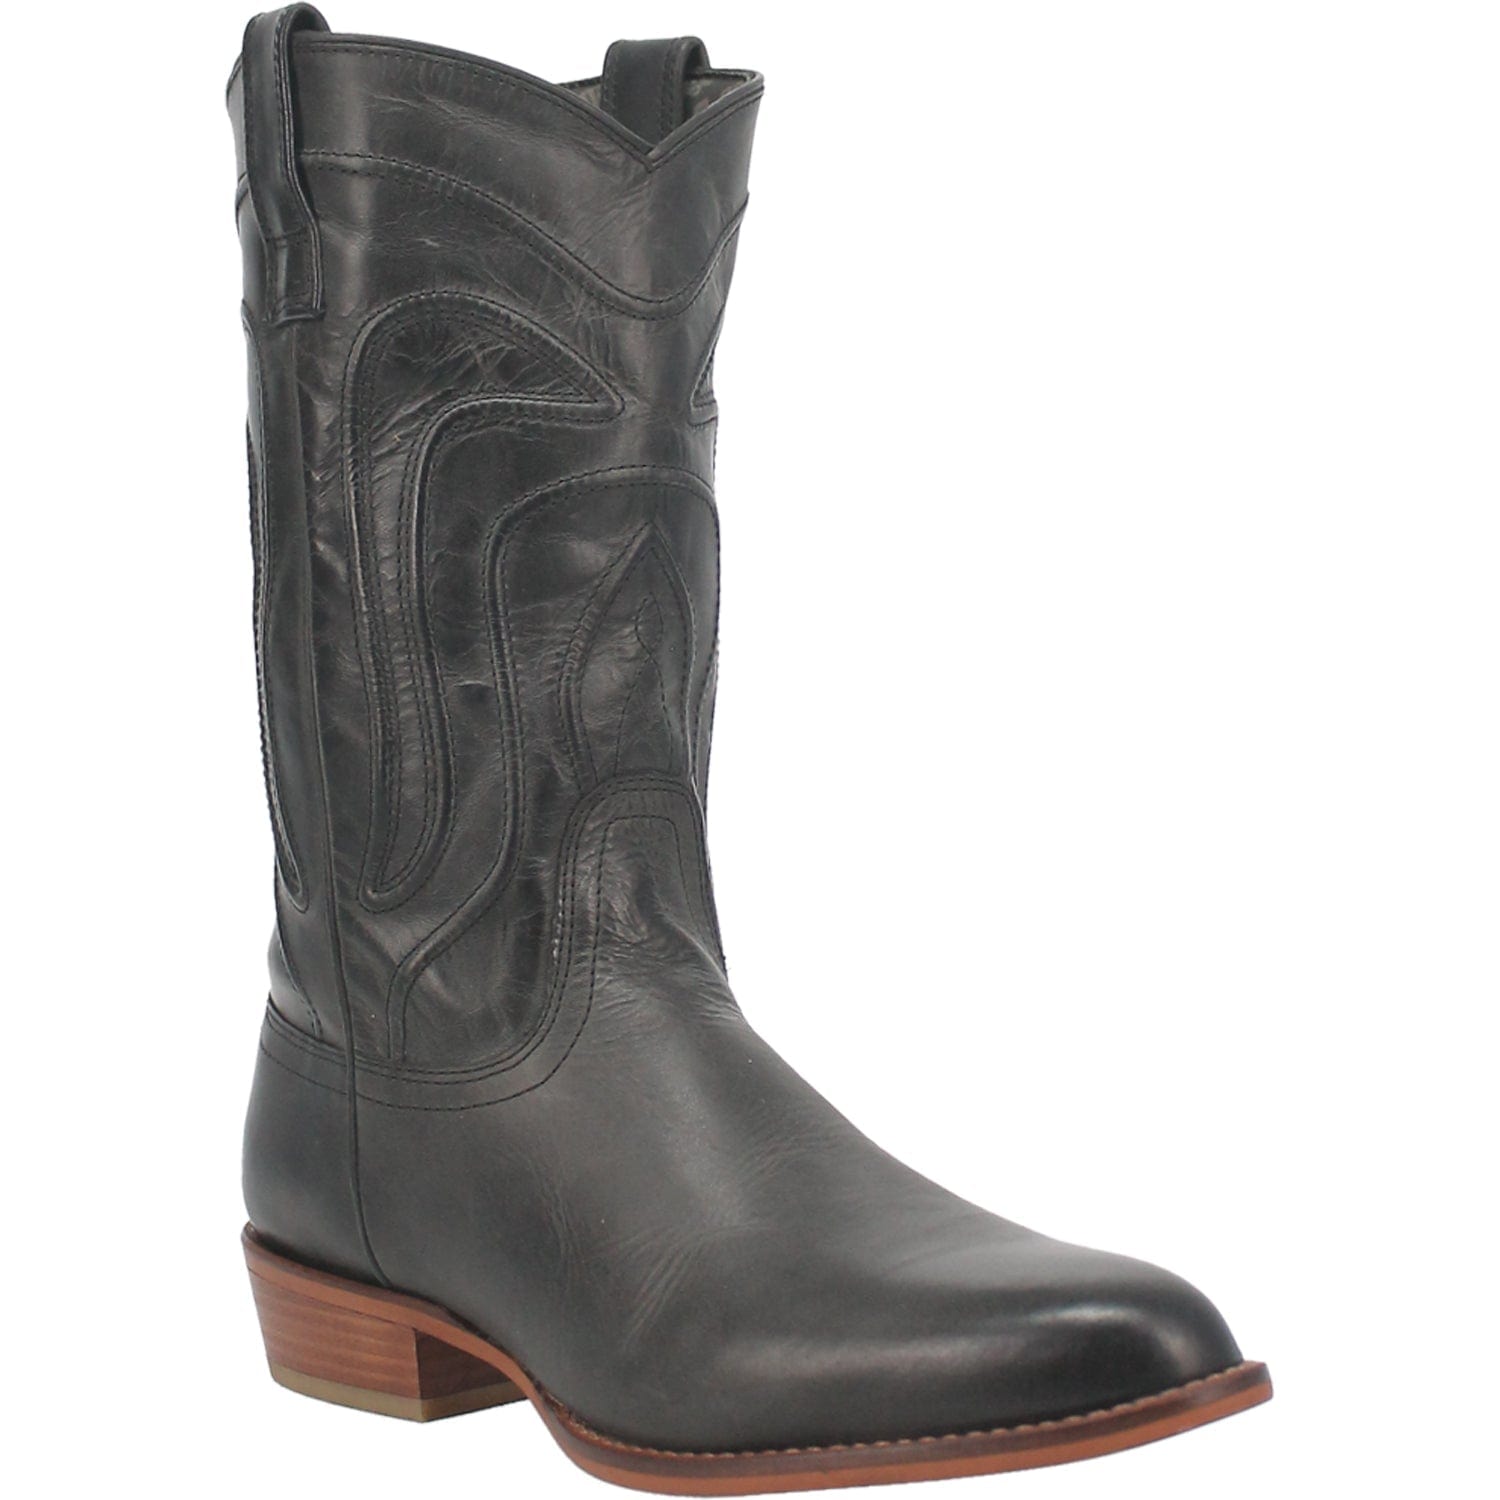 Dingo Boots Dingo Men's #Montana Black Leather Cowboy Boots DI 316